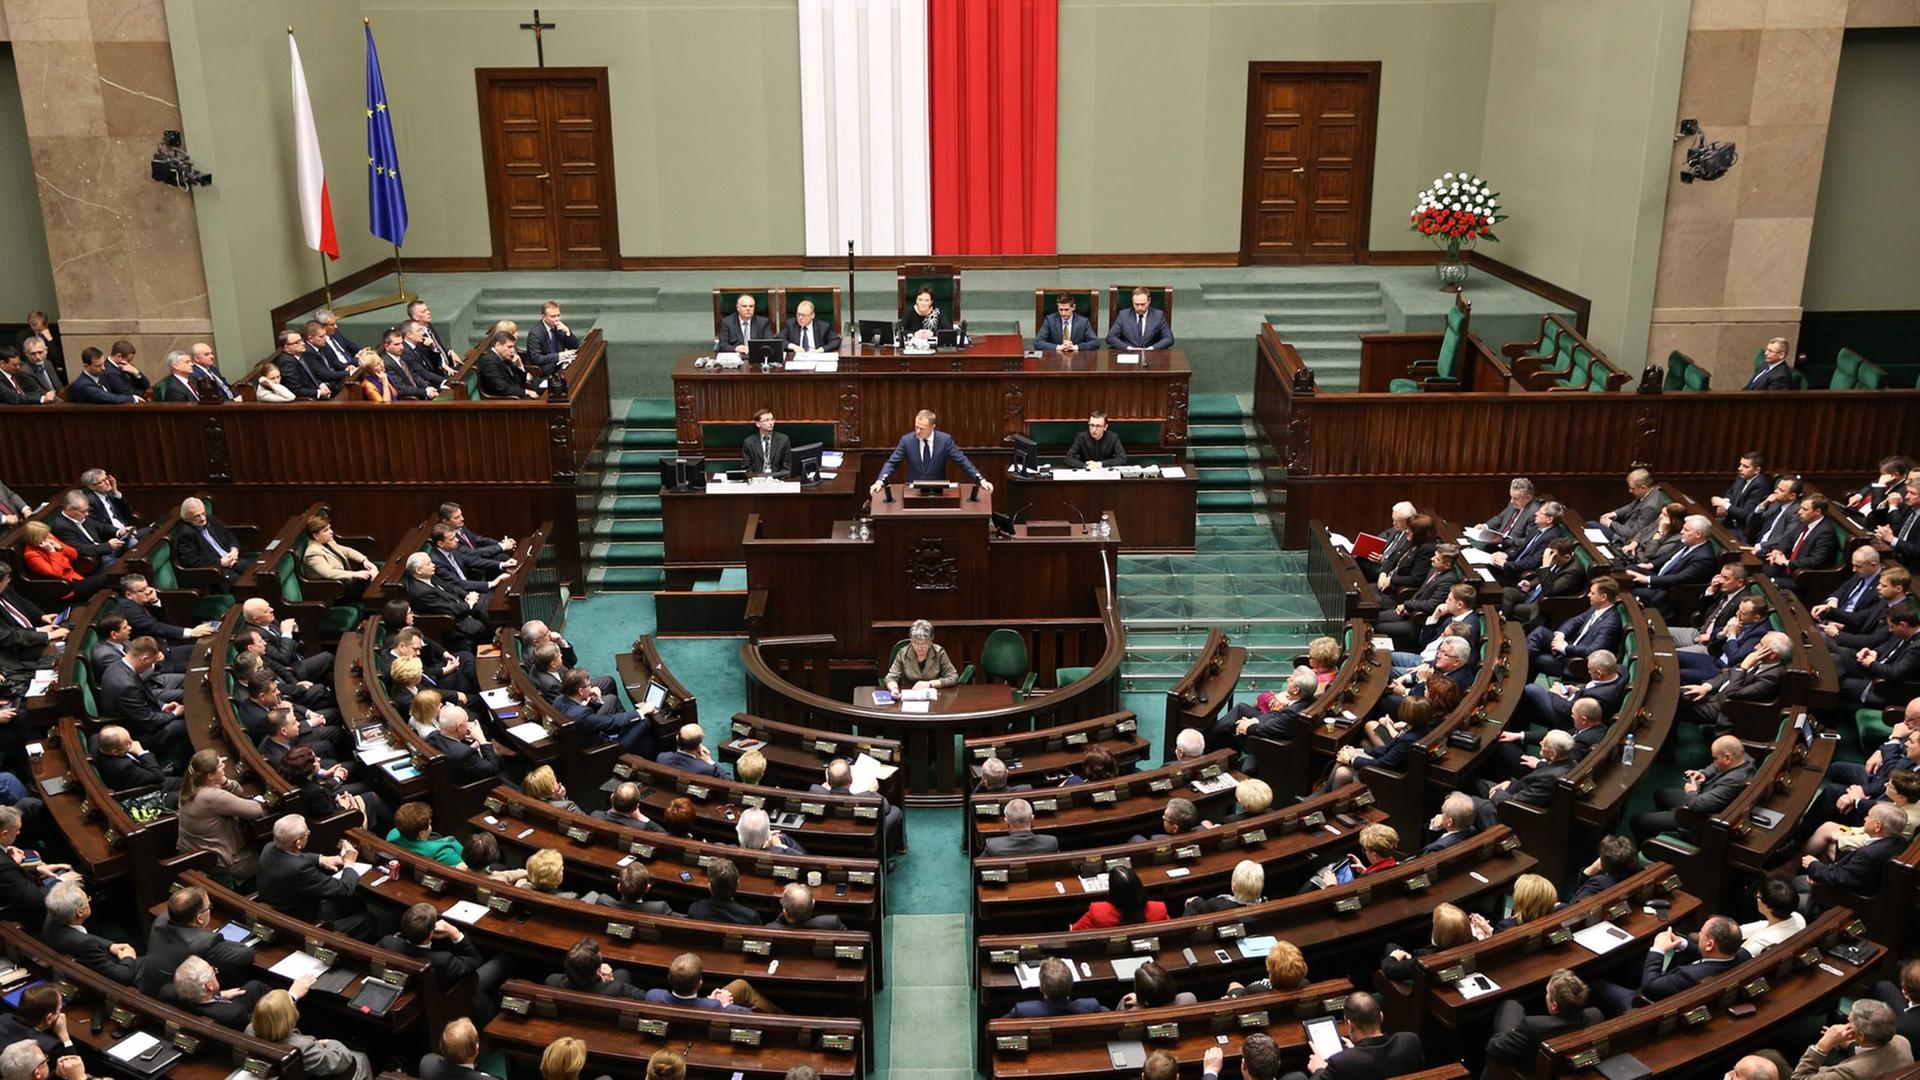 Das Polnische Parlament in Warschau am 05.03.2014. Der Premierminister Donald Tusk (bis September 2014) am Rednerpult.